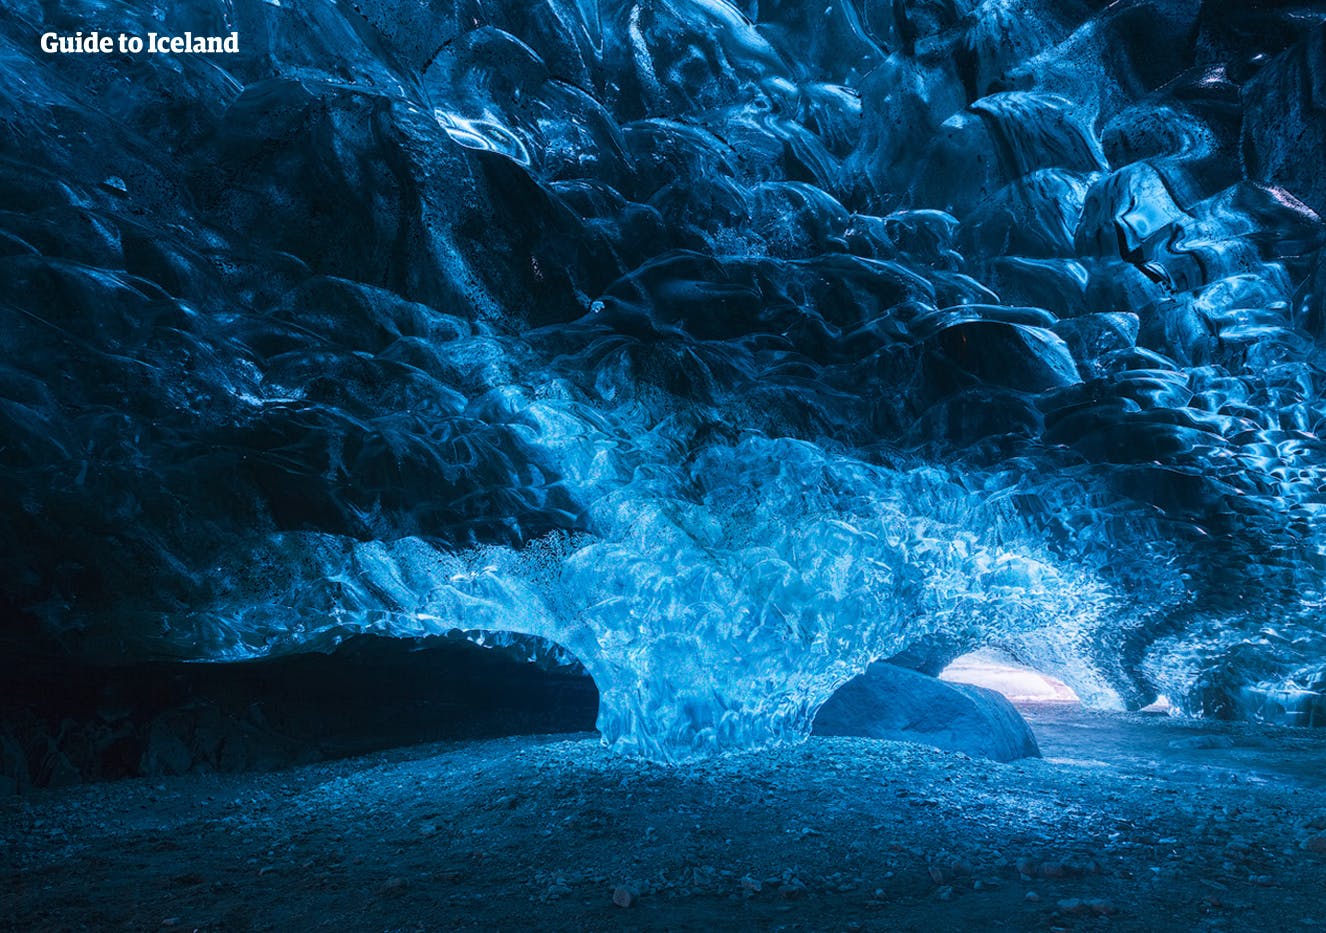 แสงสีฟ้าที่มหัศจรรย์ที่ถ้ำน้ำแข็งตามธรรมชาติในอุทยานแห่งชาติวัทนาโจกุล